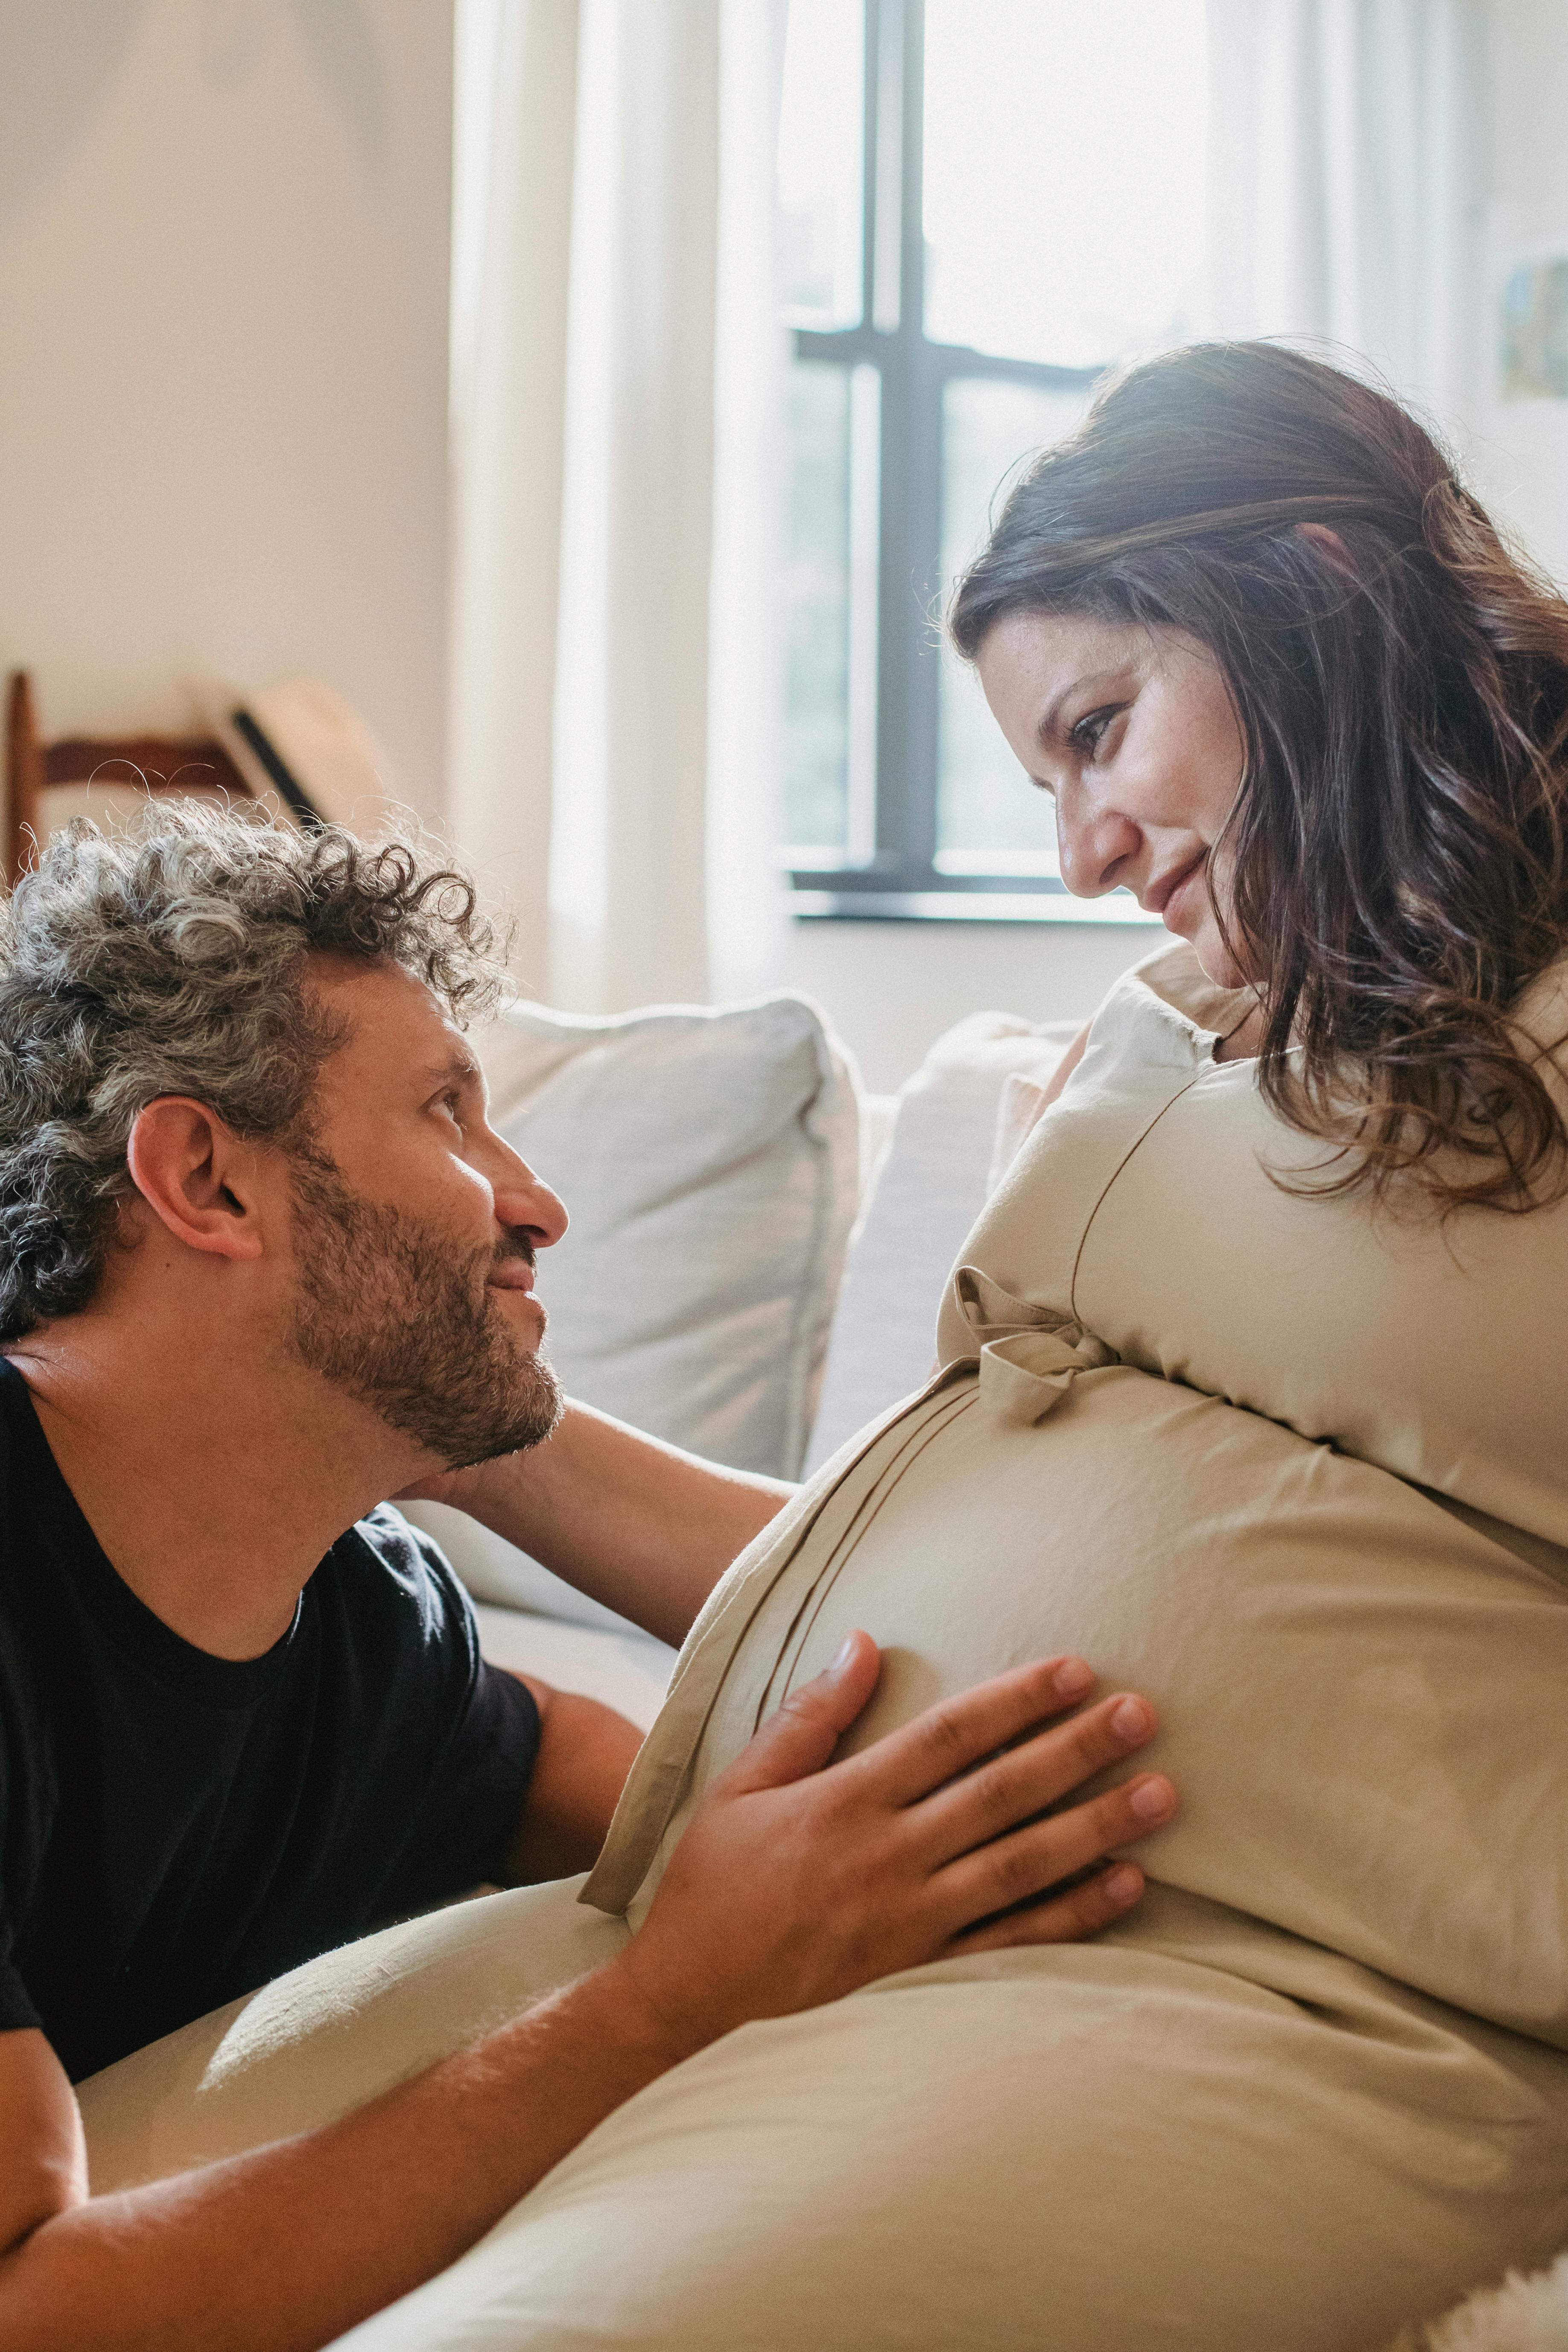 A pregnant couple | Source: Pexels